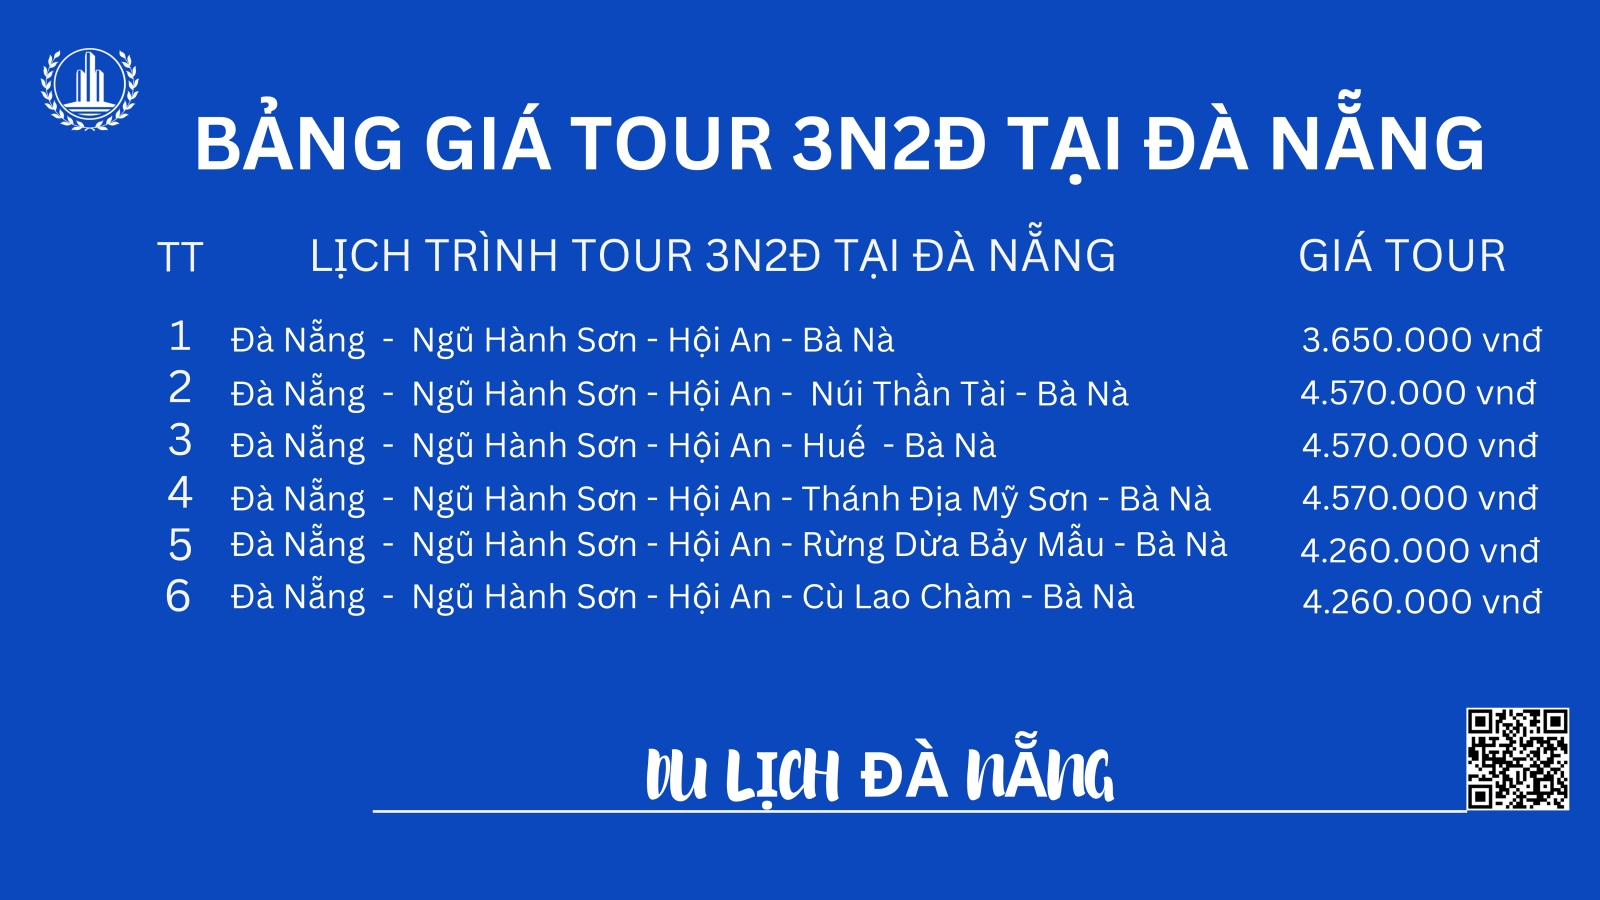 Bảng giá tour 3n2đ tại Đà Nẵng